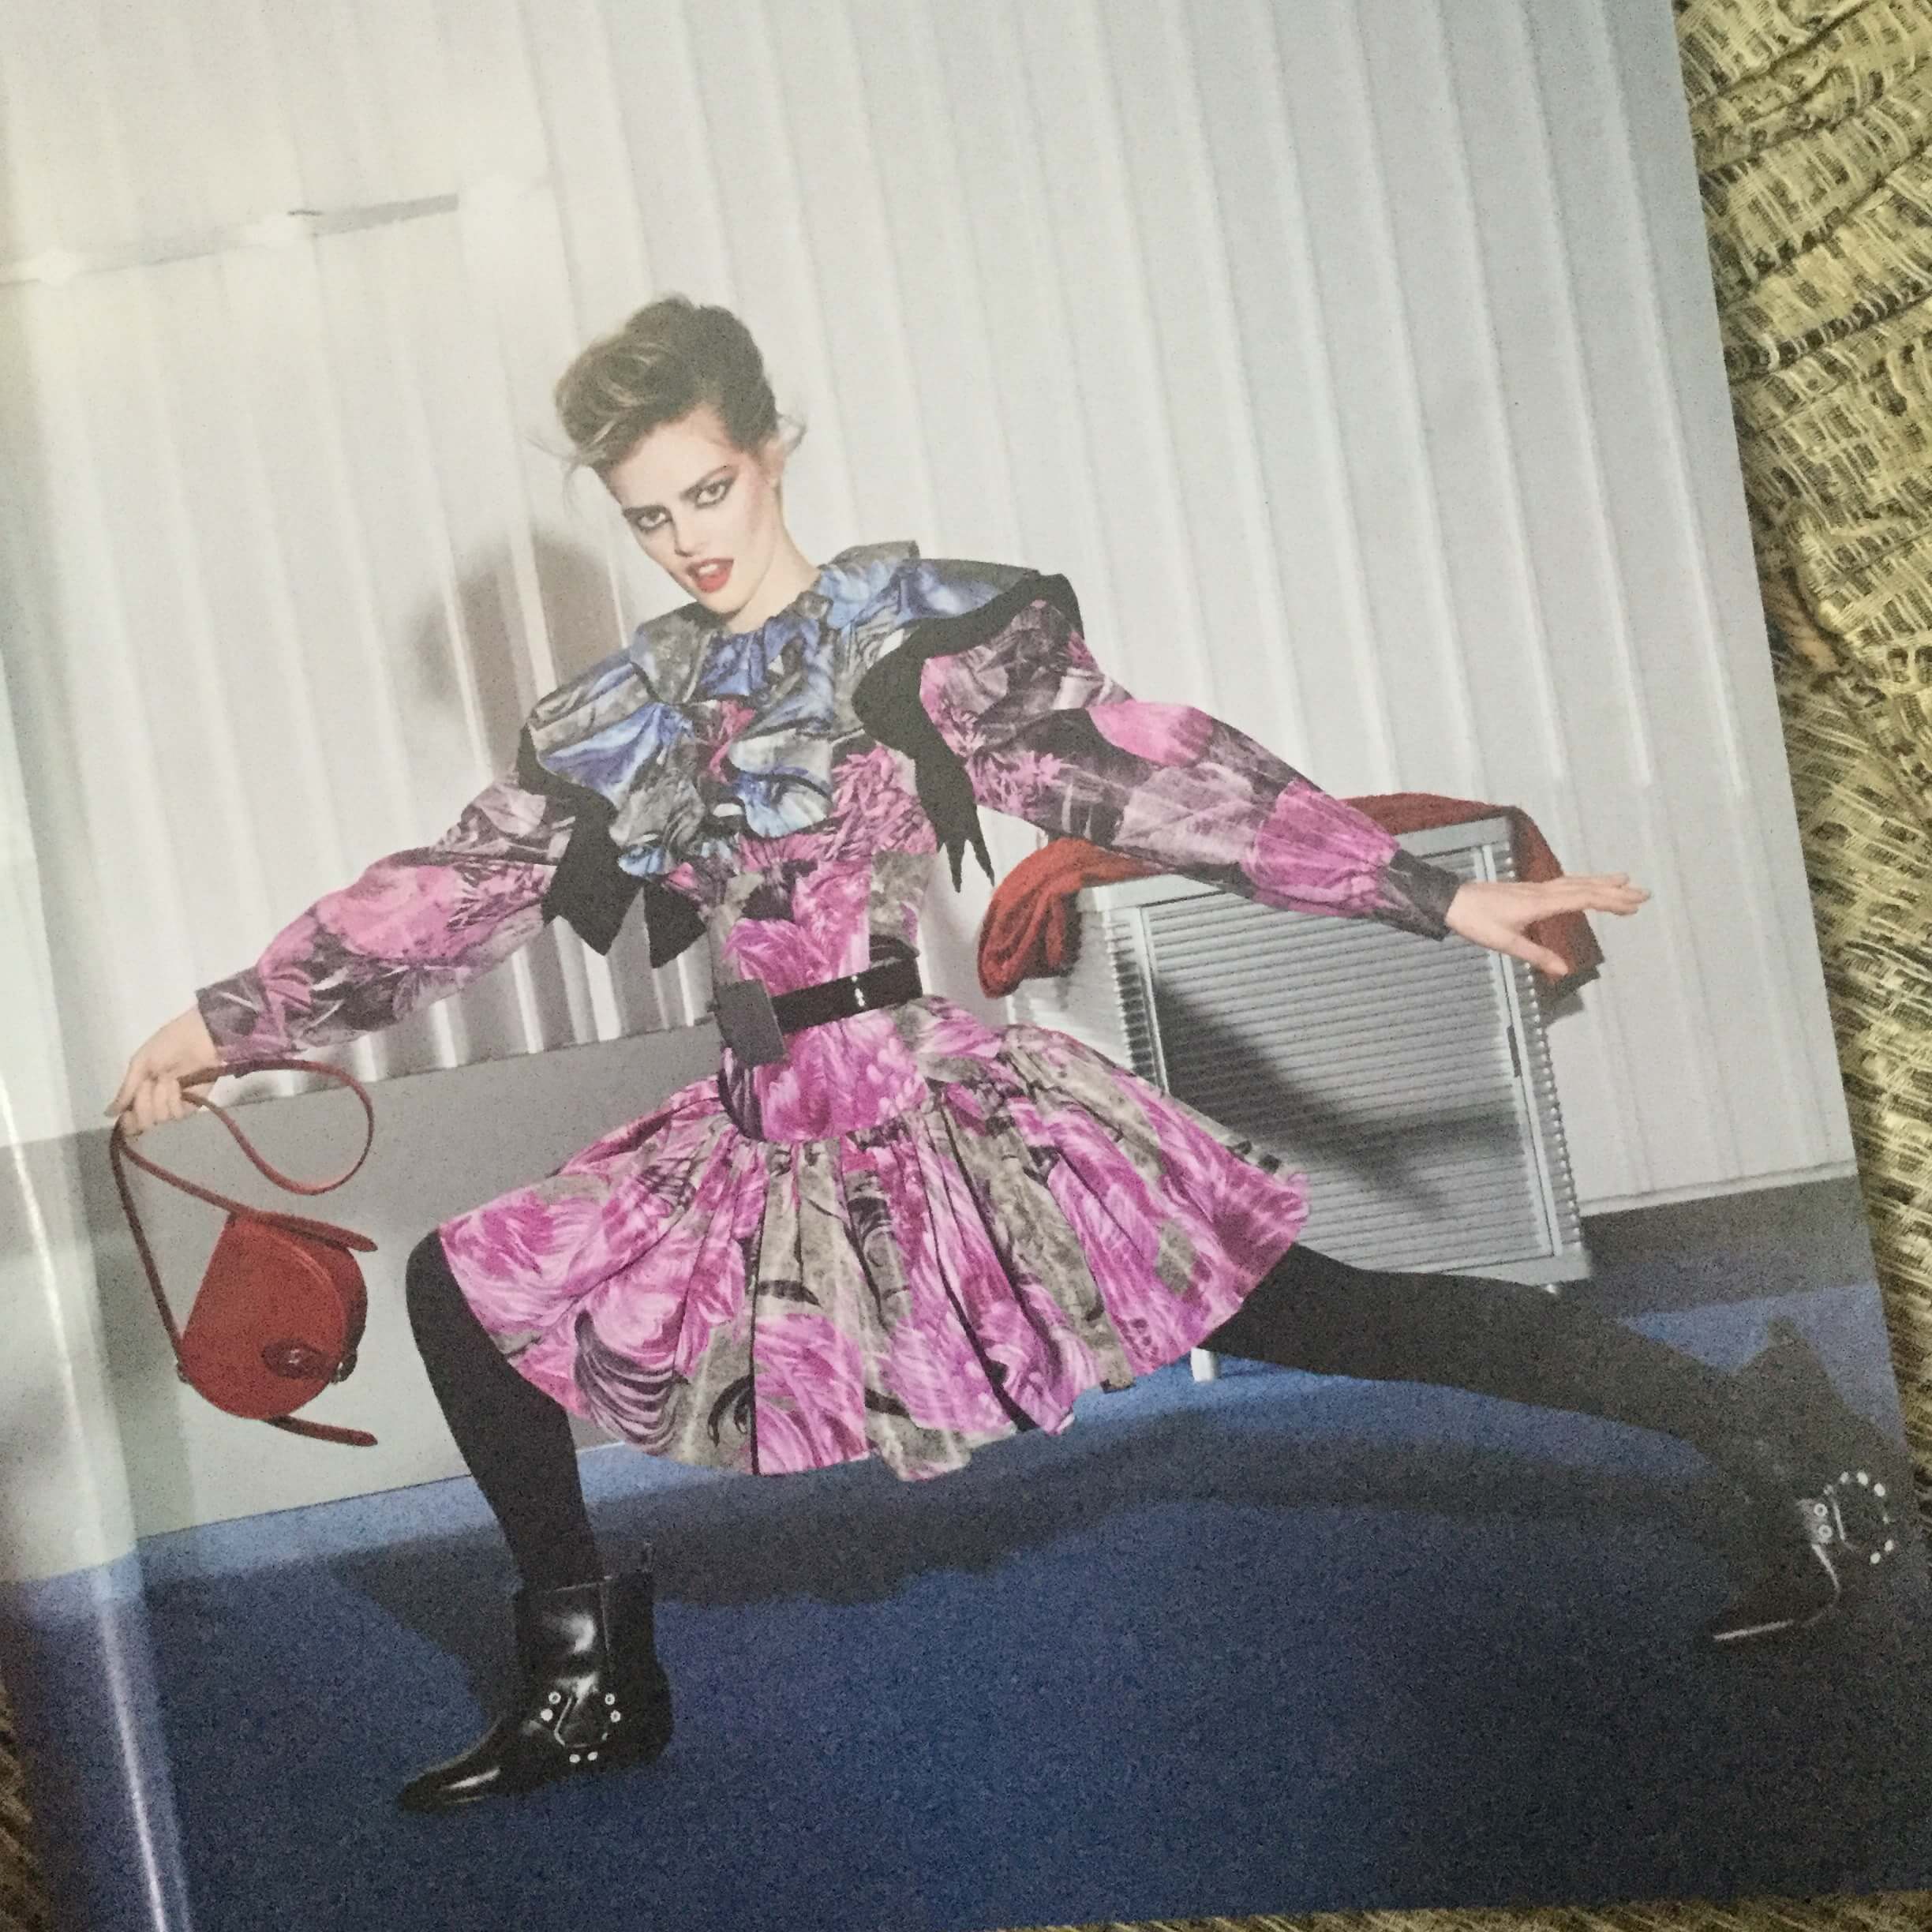 Louis Vuitton ad in British Vogue, September 2019